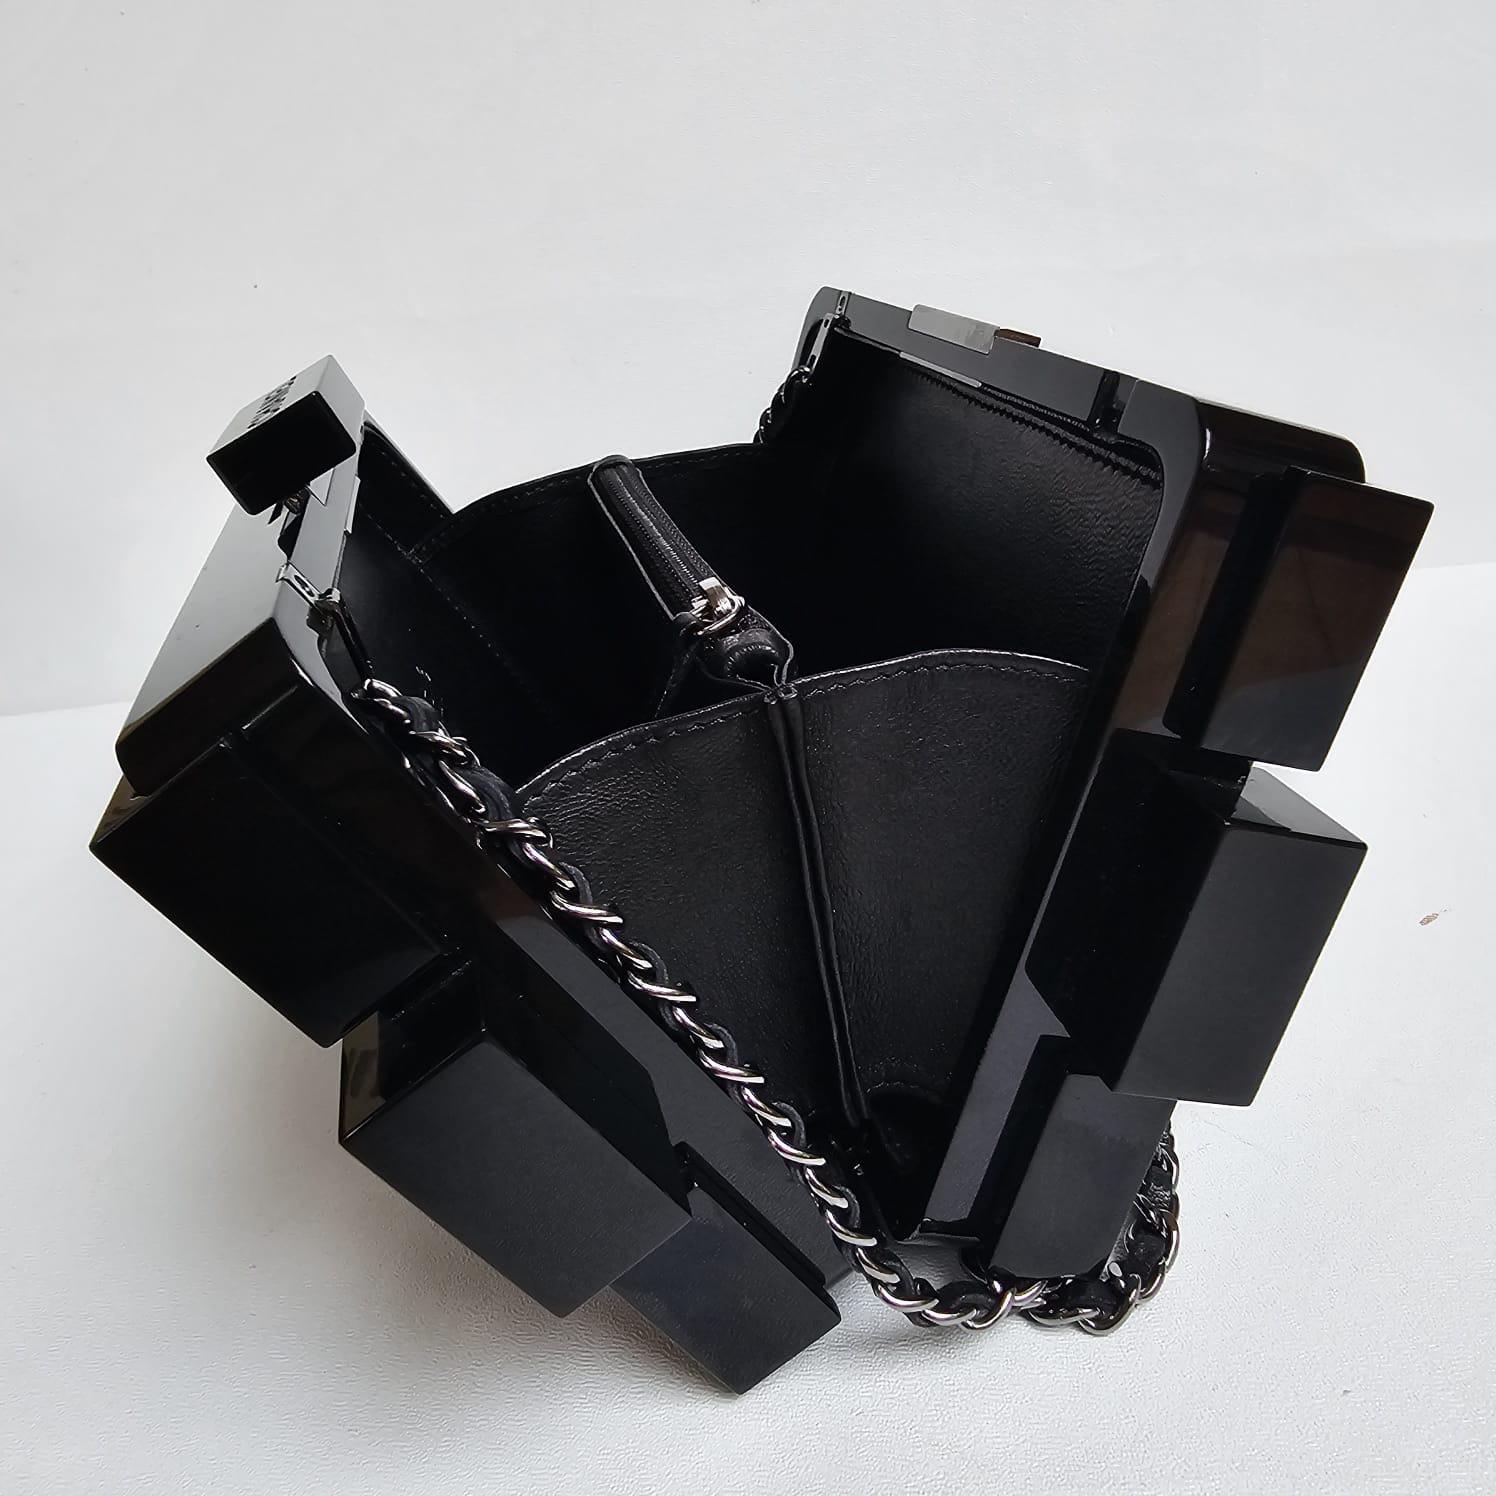 2013 Chanel Strass Crystal Lego Brick Clutch Bag 15